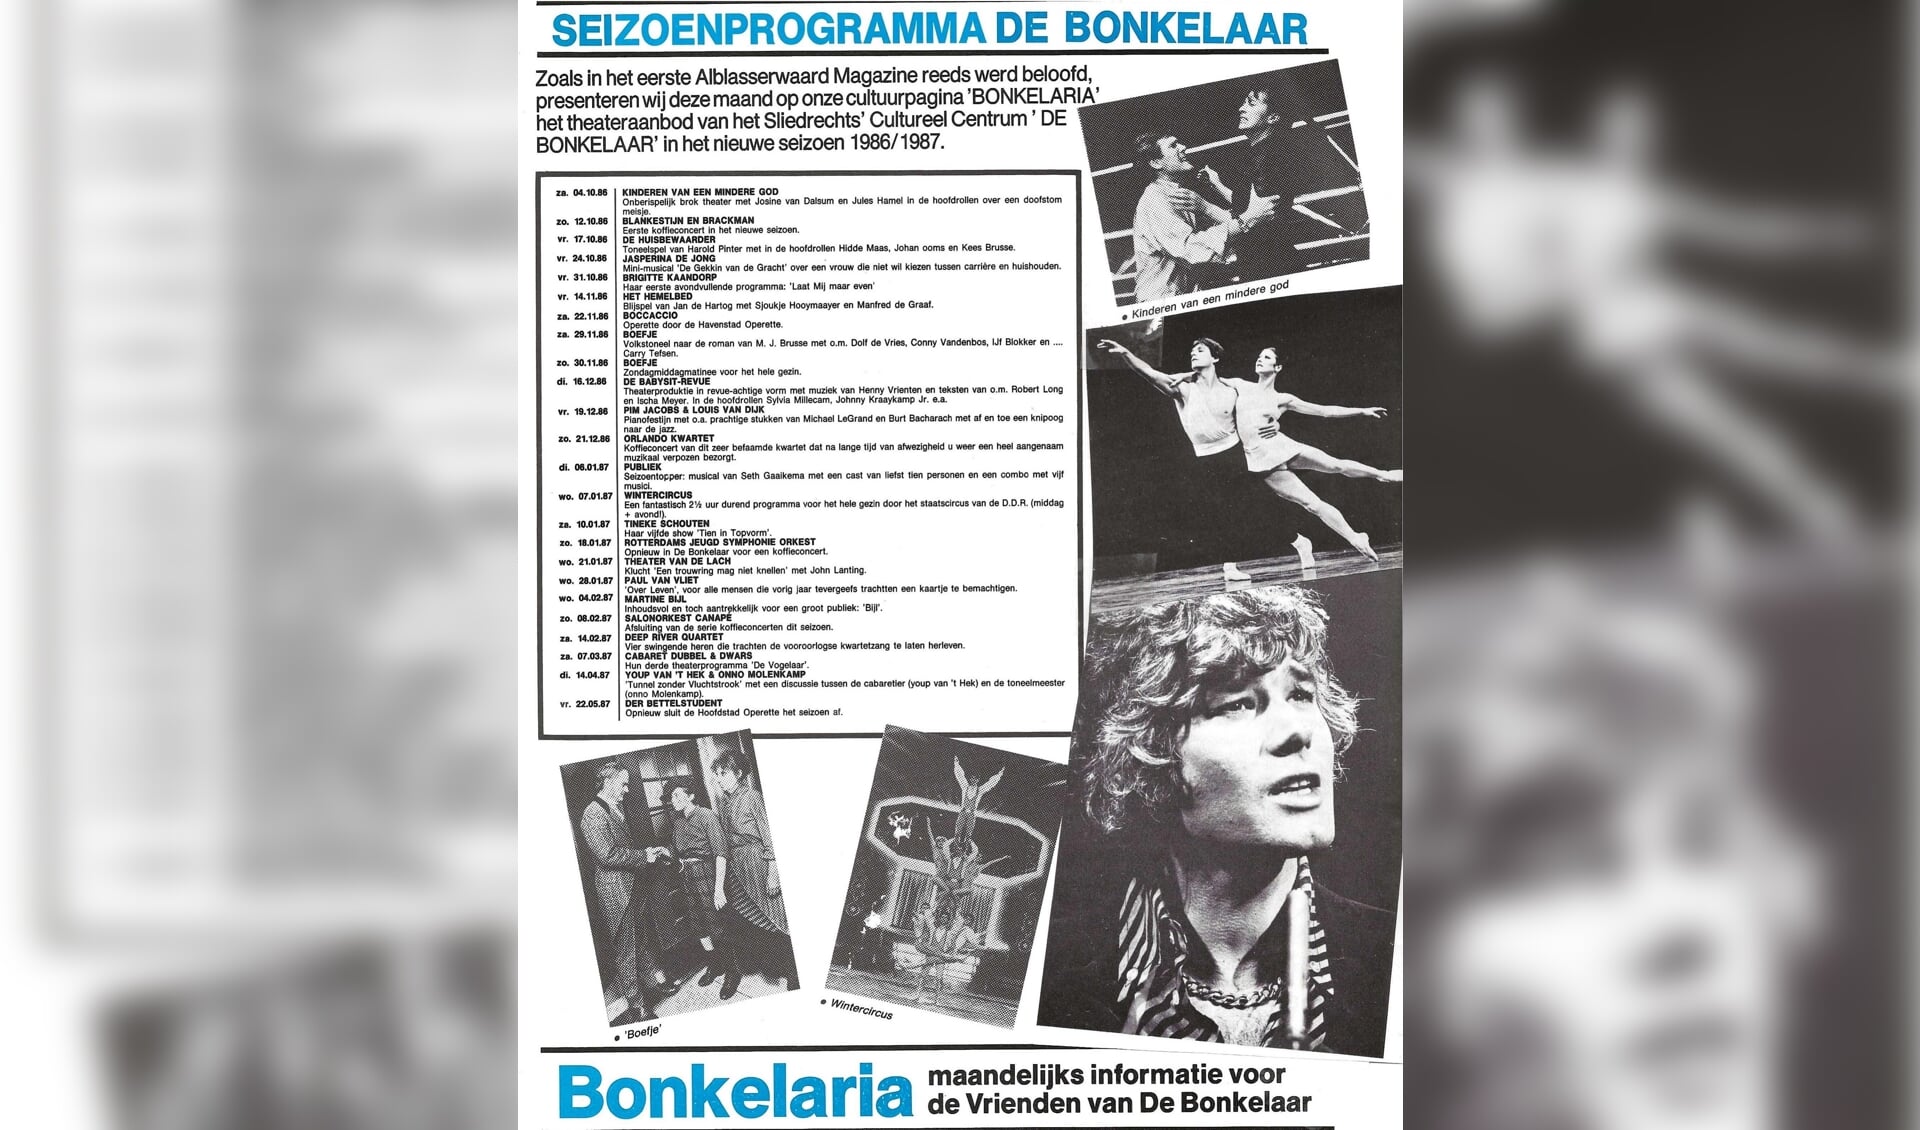 Het seizoensprogramma van De Bonkelaar.